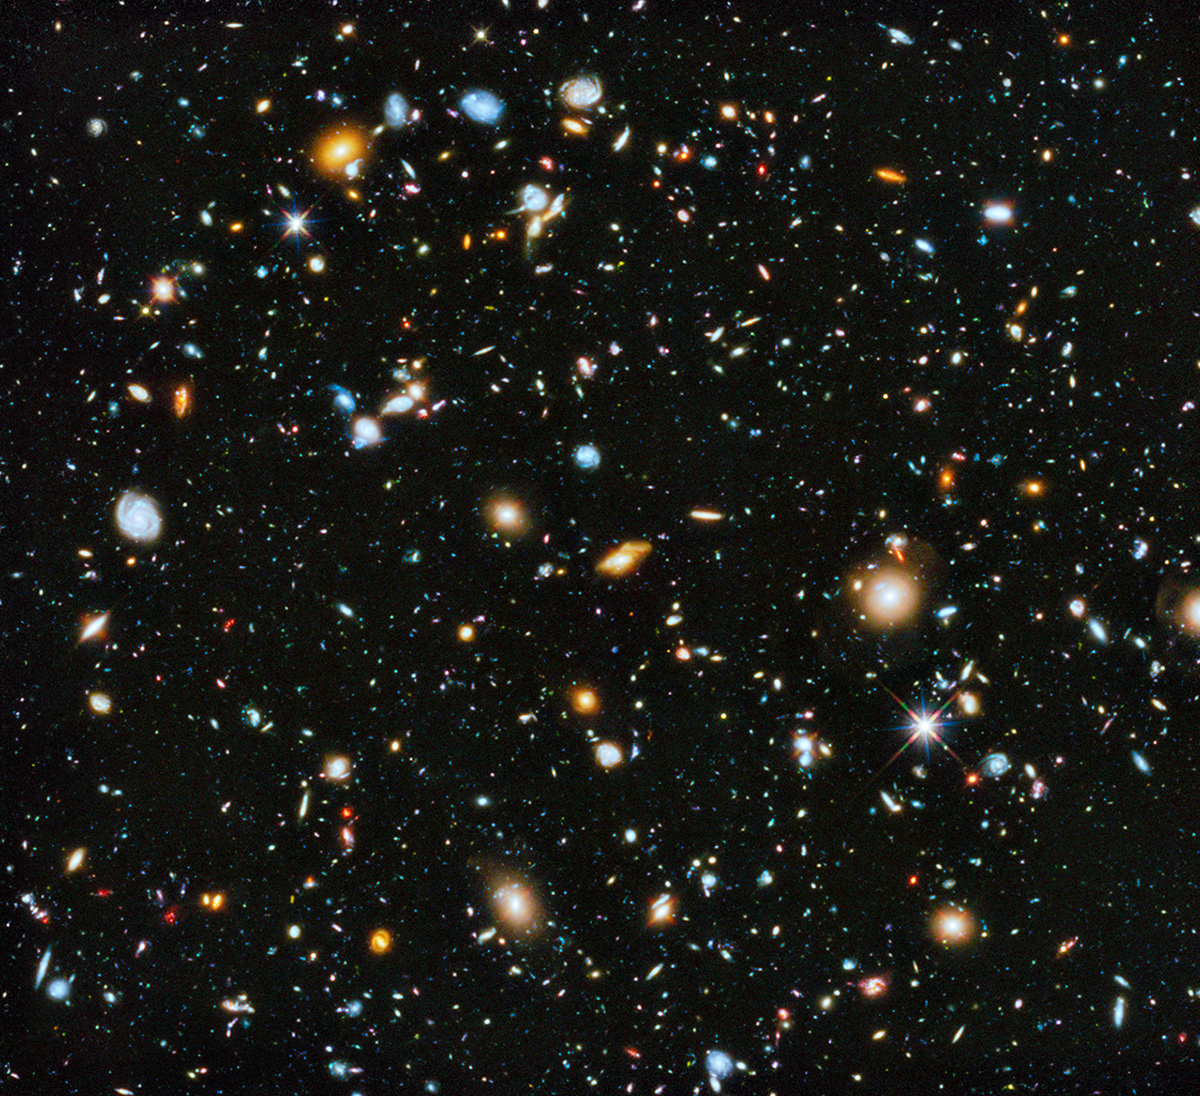 2014 Hubble Ultra Deep Field Image